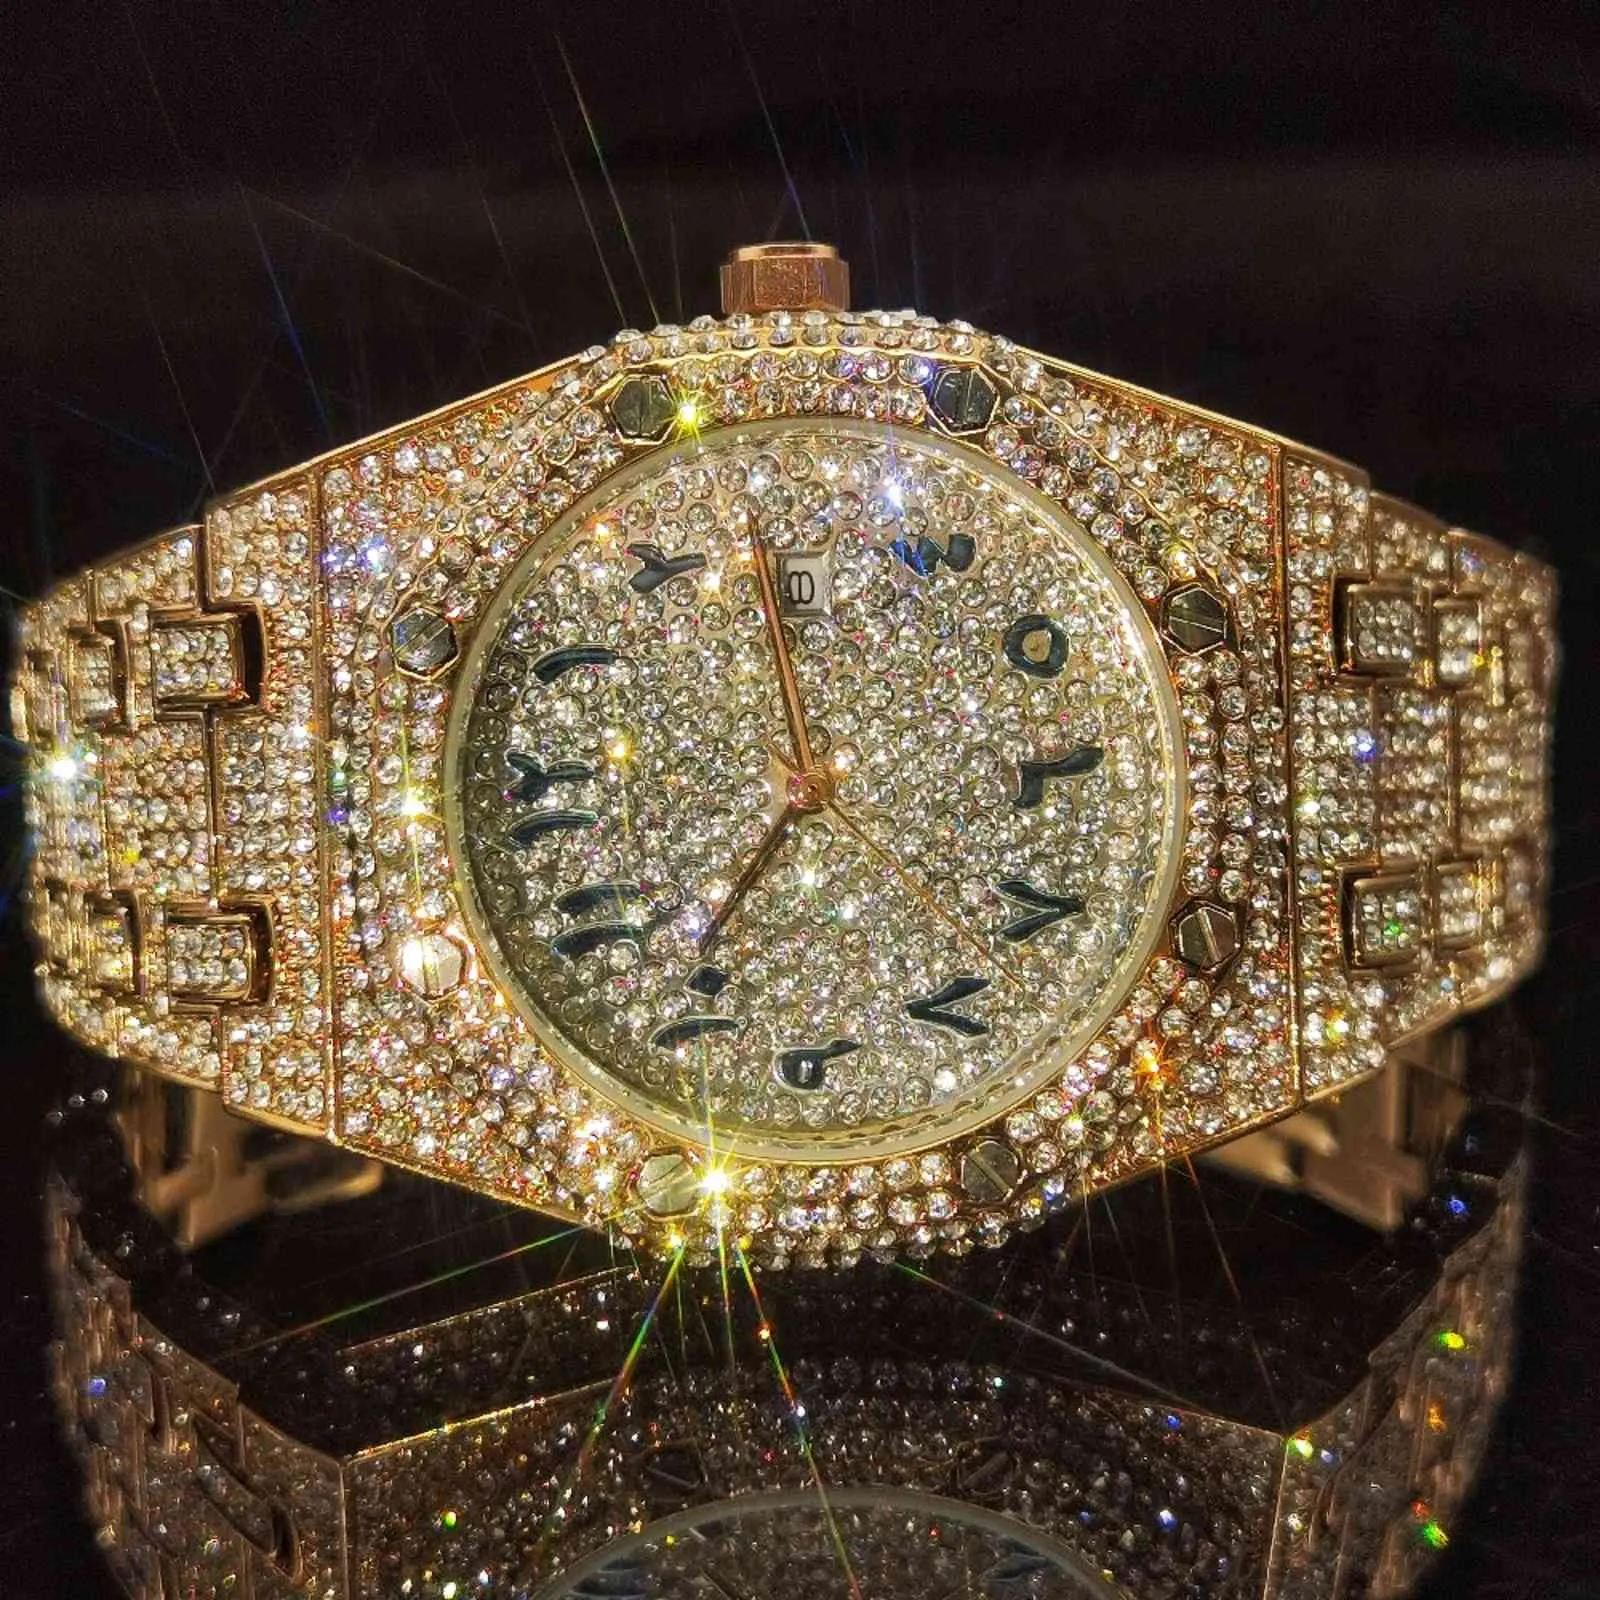 Missfox Arabische Ziffern Mann Uhren Rose Gold Quarz Voll Diamant Luxus Armbanduhr Männer Relógio Masculino Hiphop Edelstahl